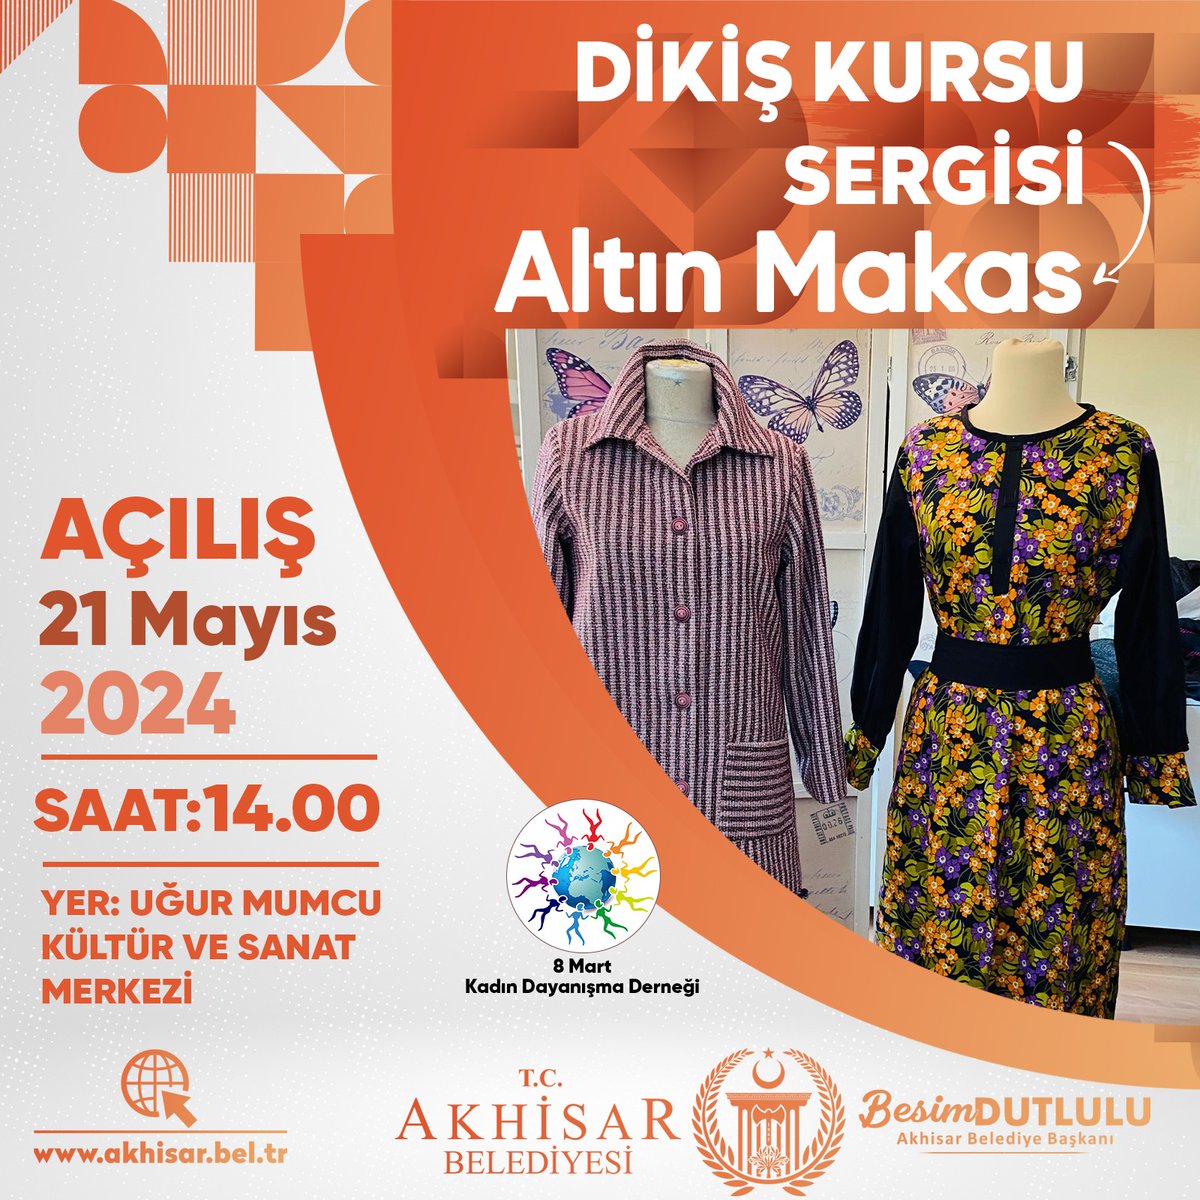 8 Mart Kadın Dayanışma Derneği Altın Makas Sergisi 21 Mayıs Salı günü saat 14.00'de Uğur Mumcu Kültür ve Sanat Merkezinde açılacaktır. Tüm halkımız davetlidir.